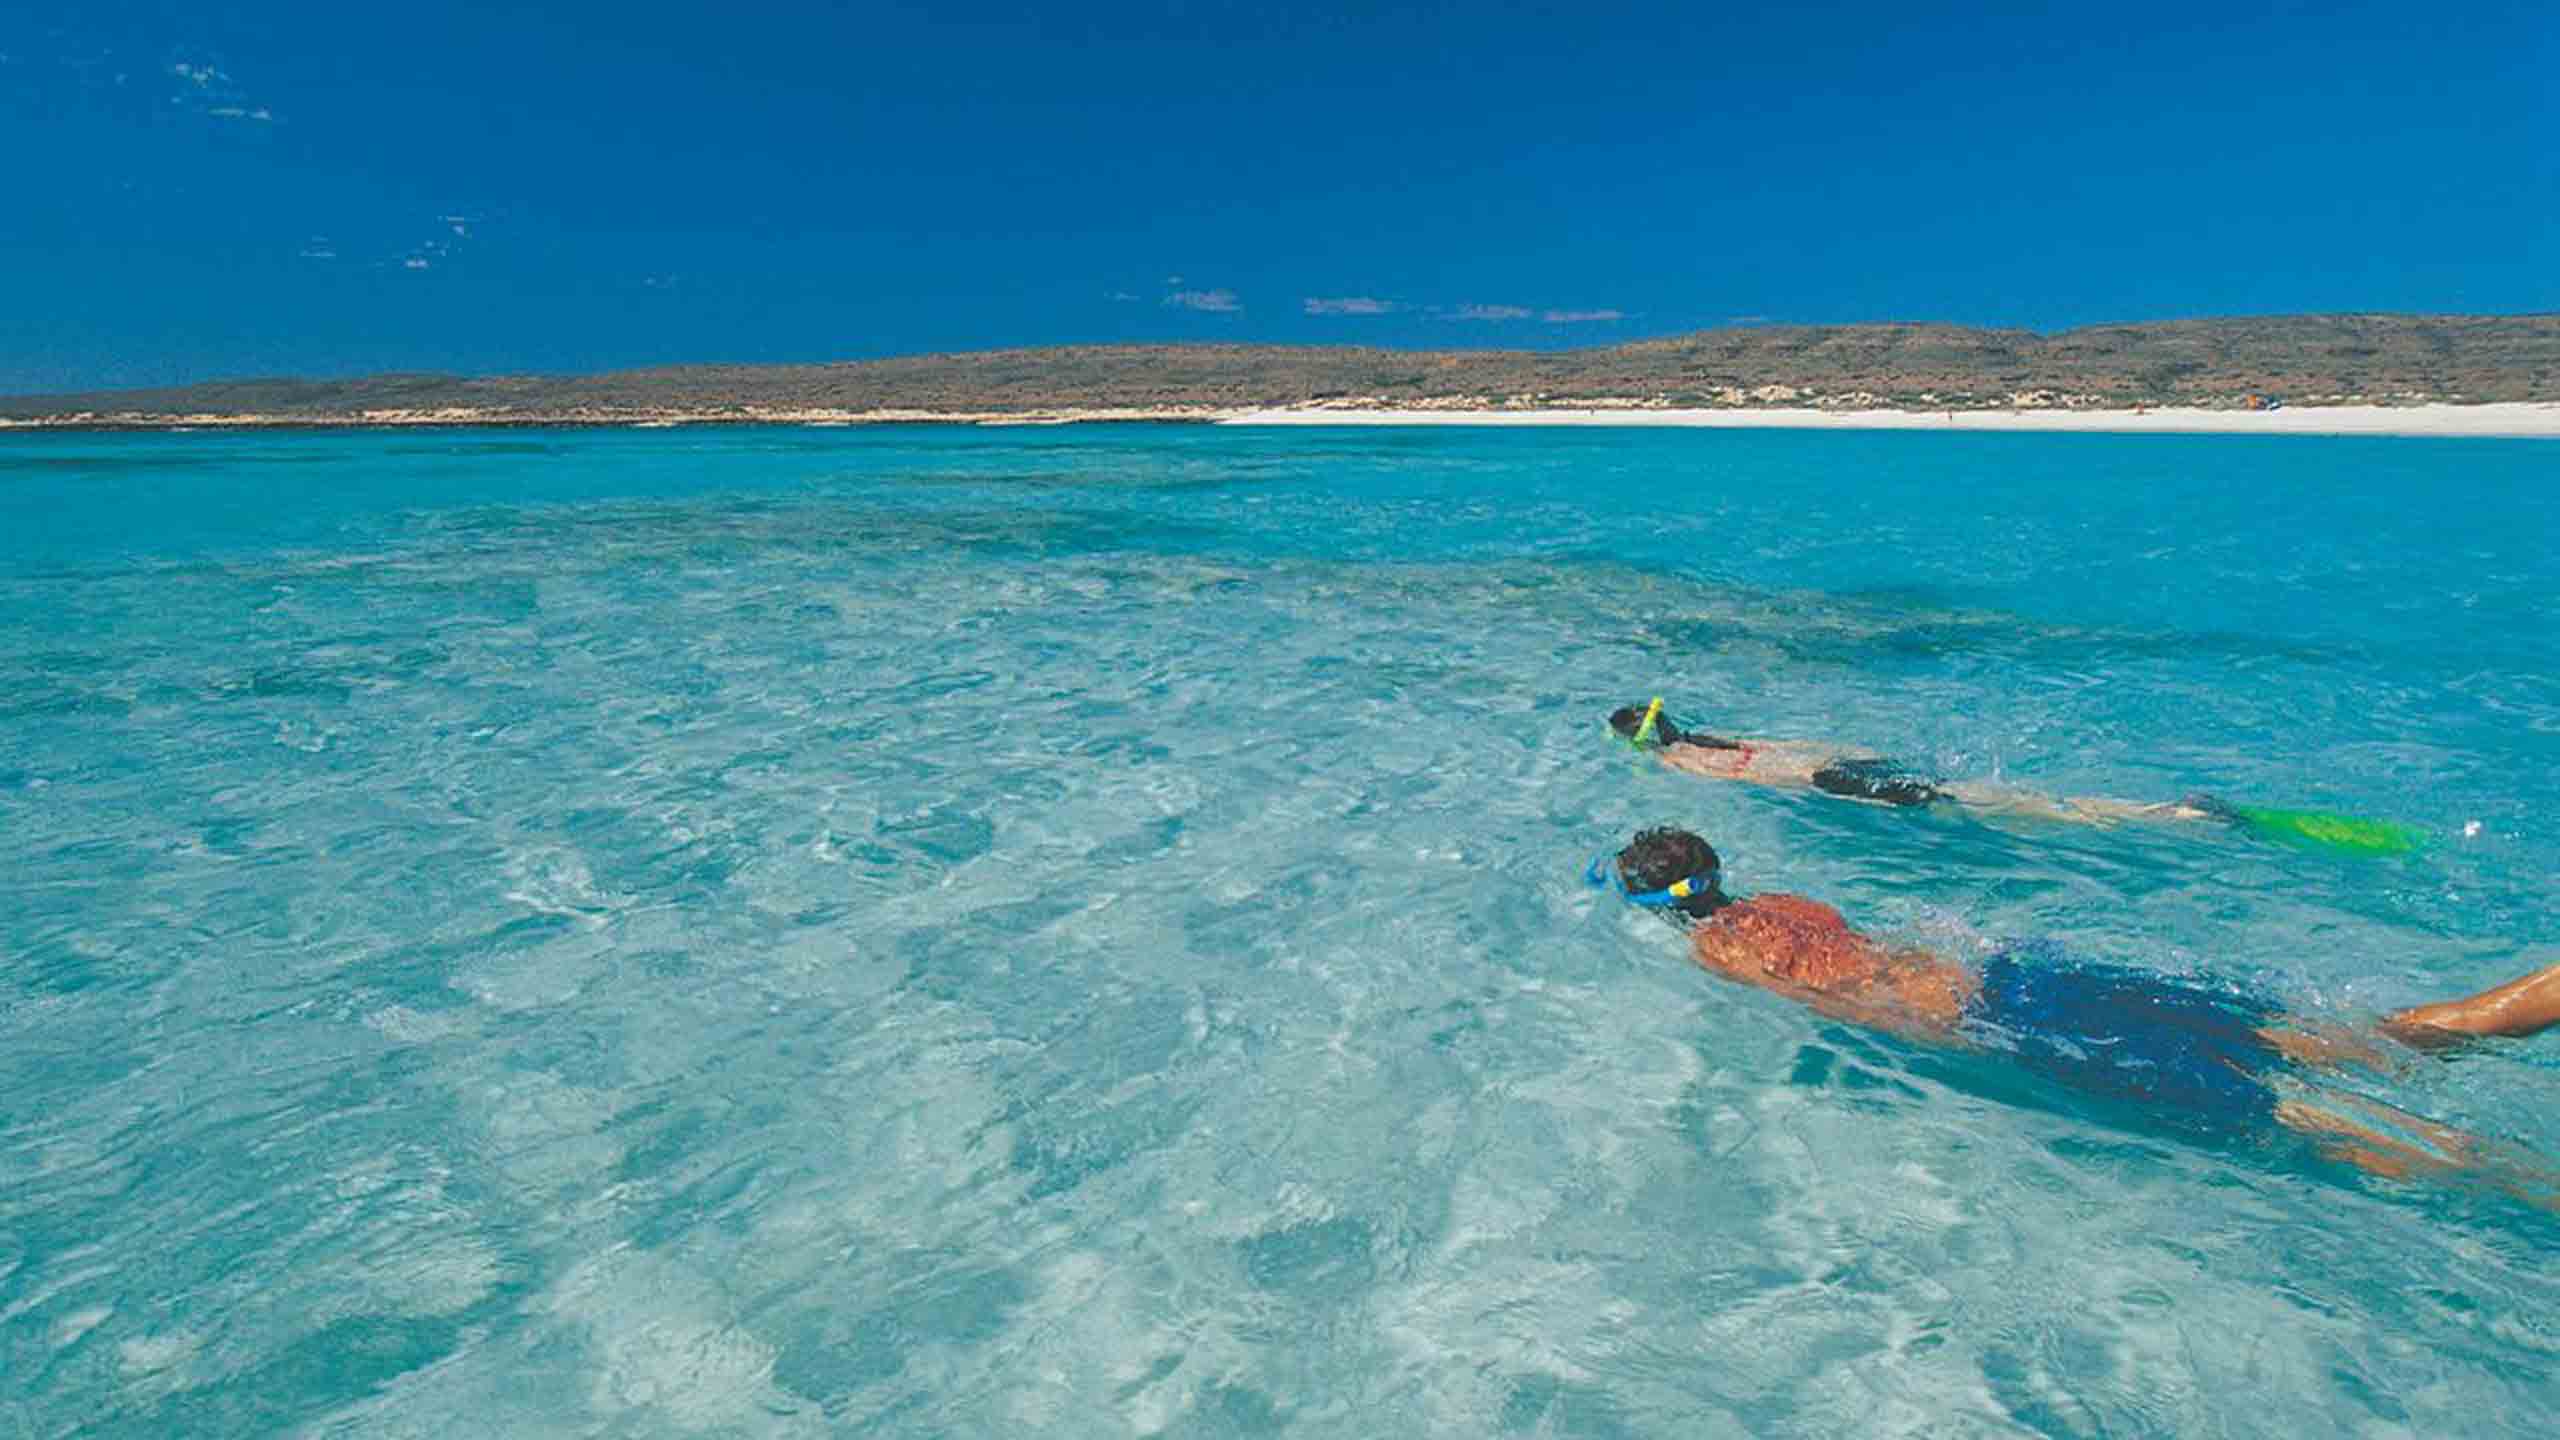 sal-salis-nigaloo-reef-snorkeling-among-pristine-waters